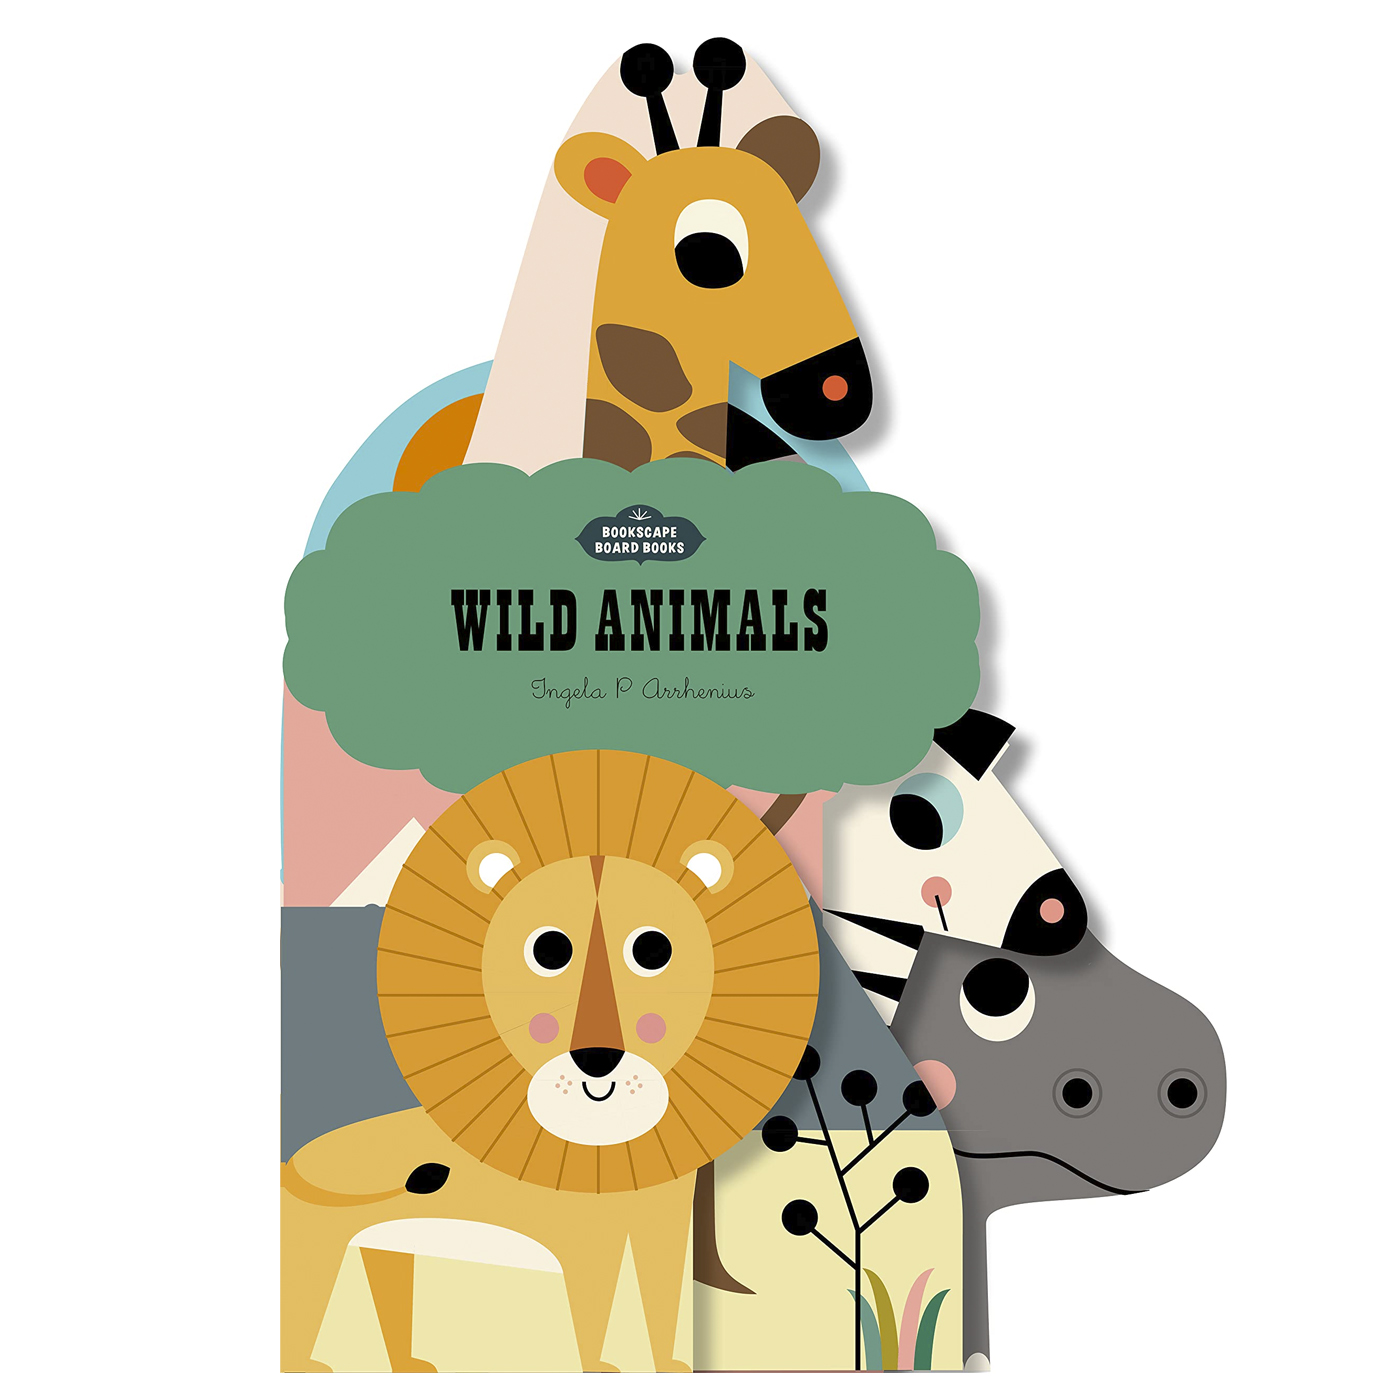  Bookscape Board Books: Wild Animals